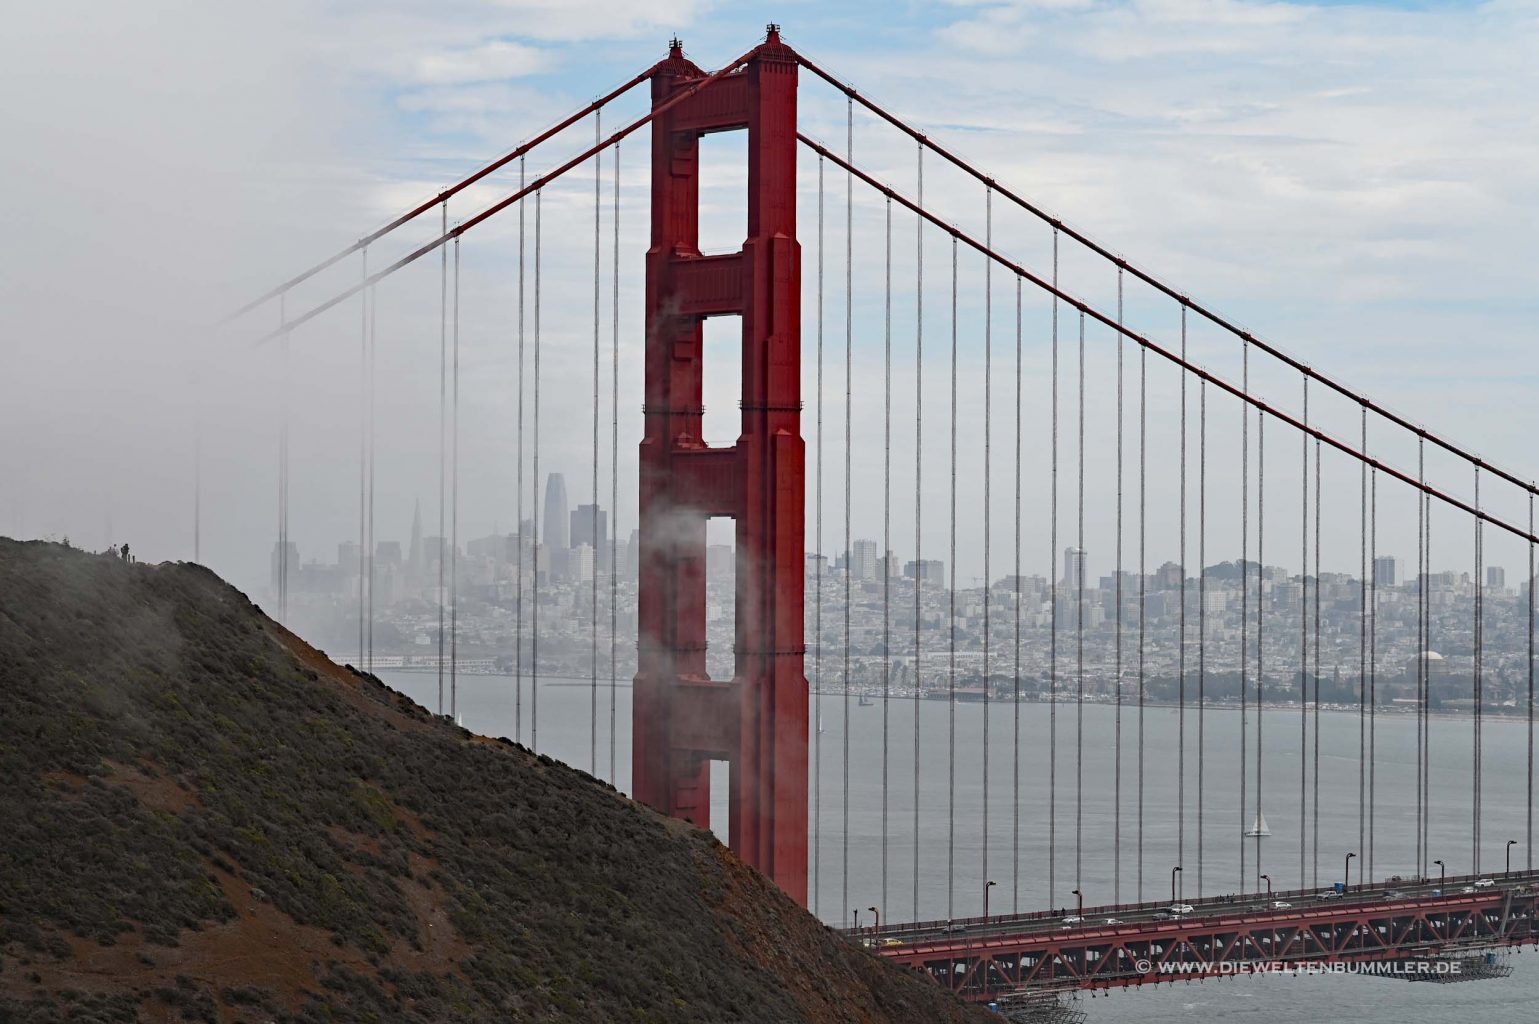 Pfeiler der Golden Gate